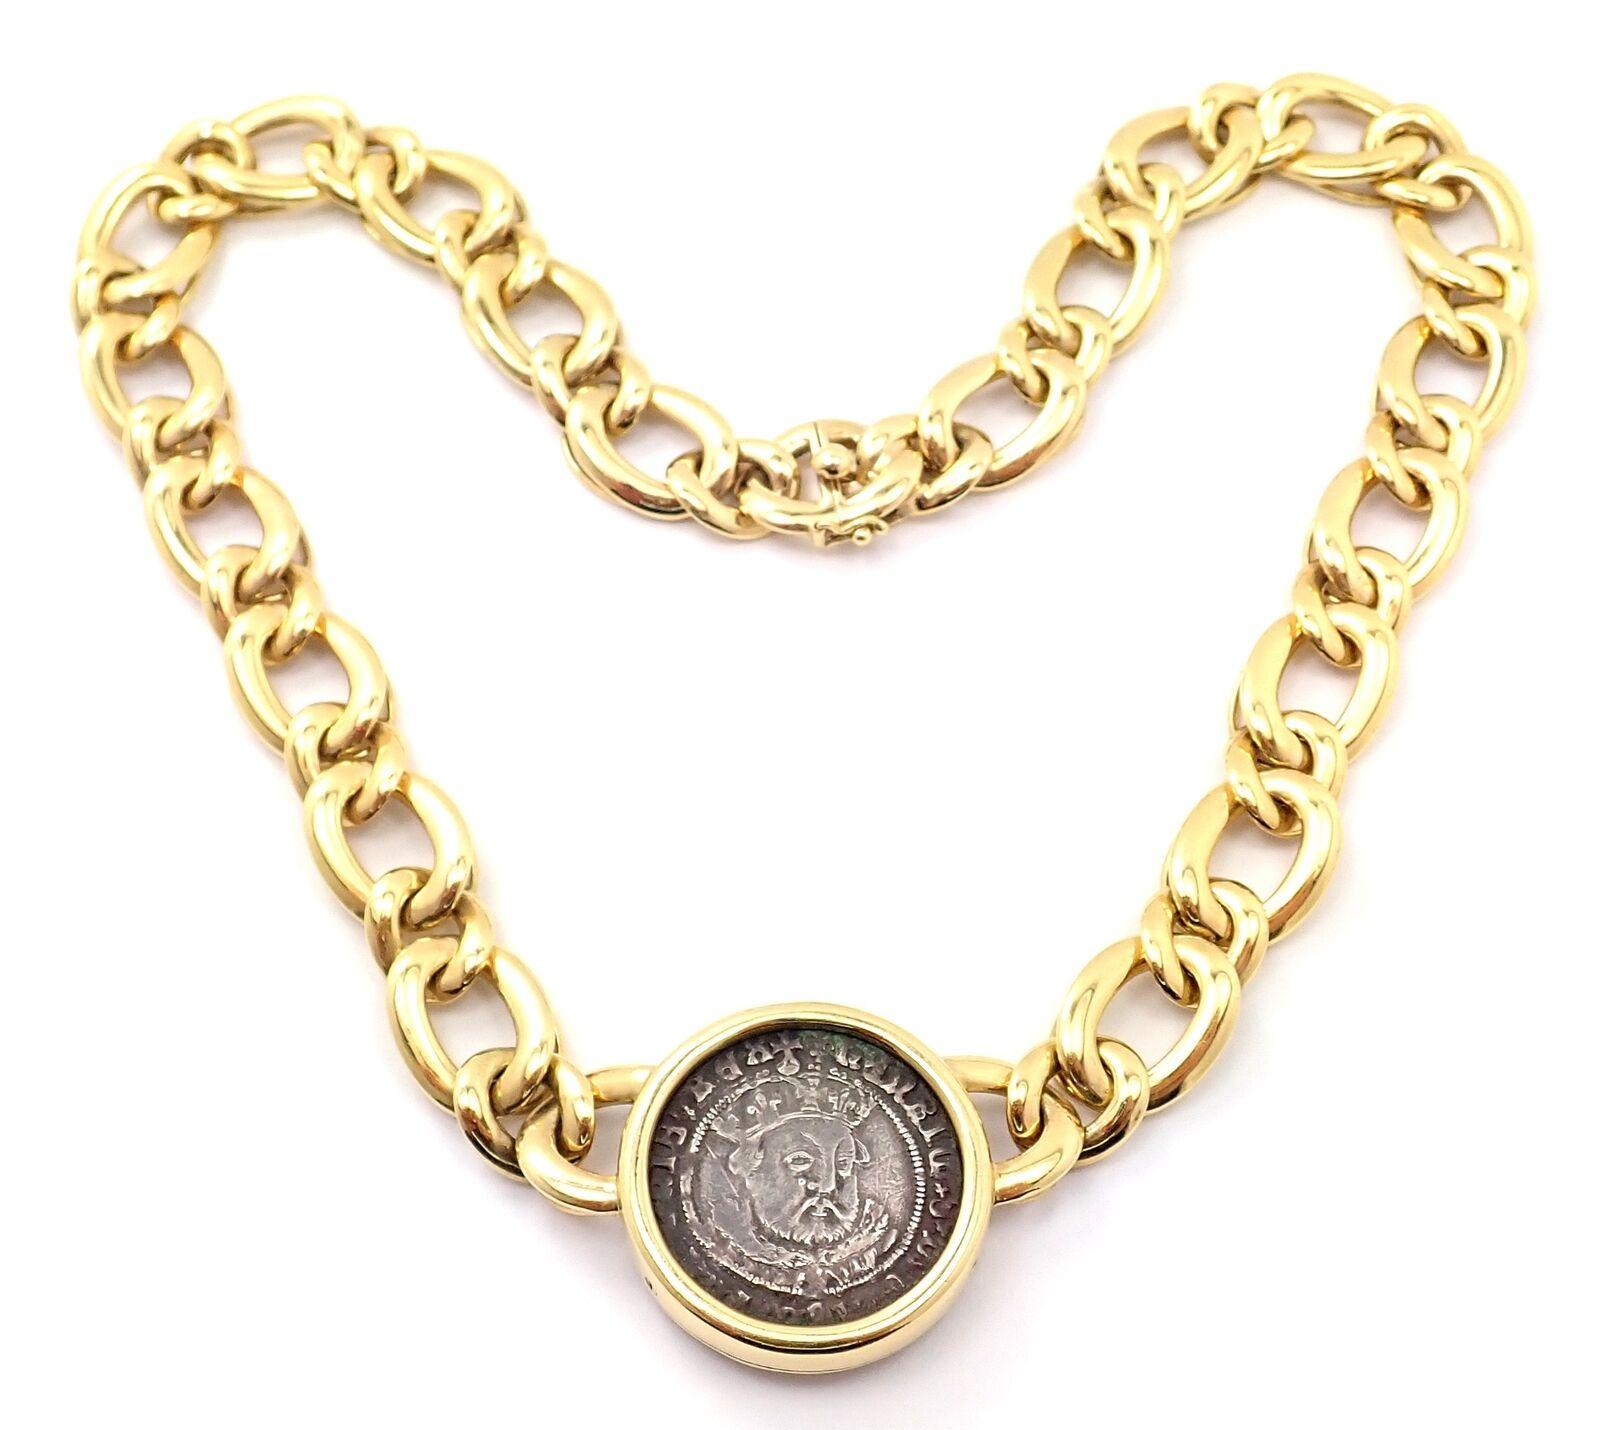 18k Gelbgold antike Münze, Gliederkette Monete Halskette von Bulgari.
Einzelheiten: 
Länge: Halskette ist 16